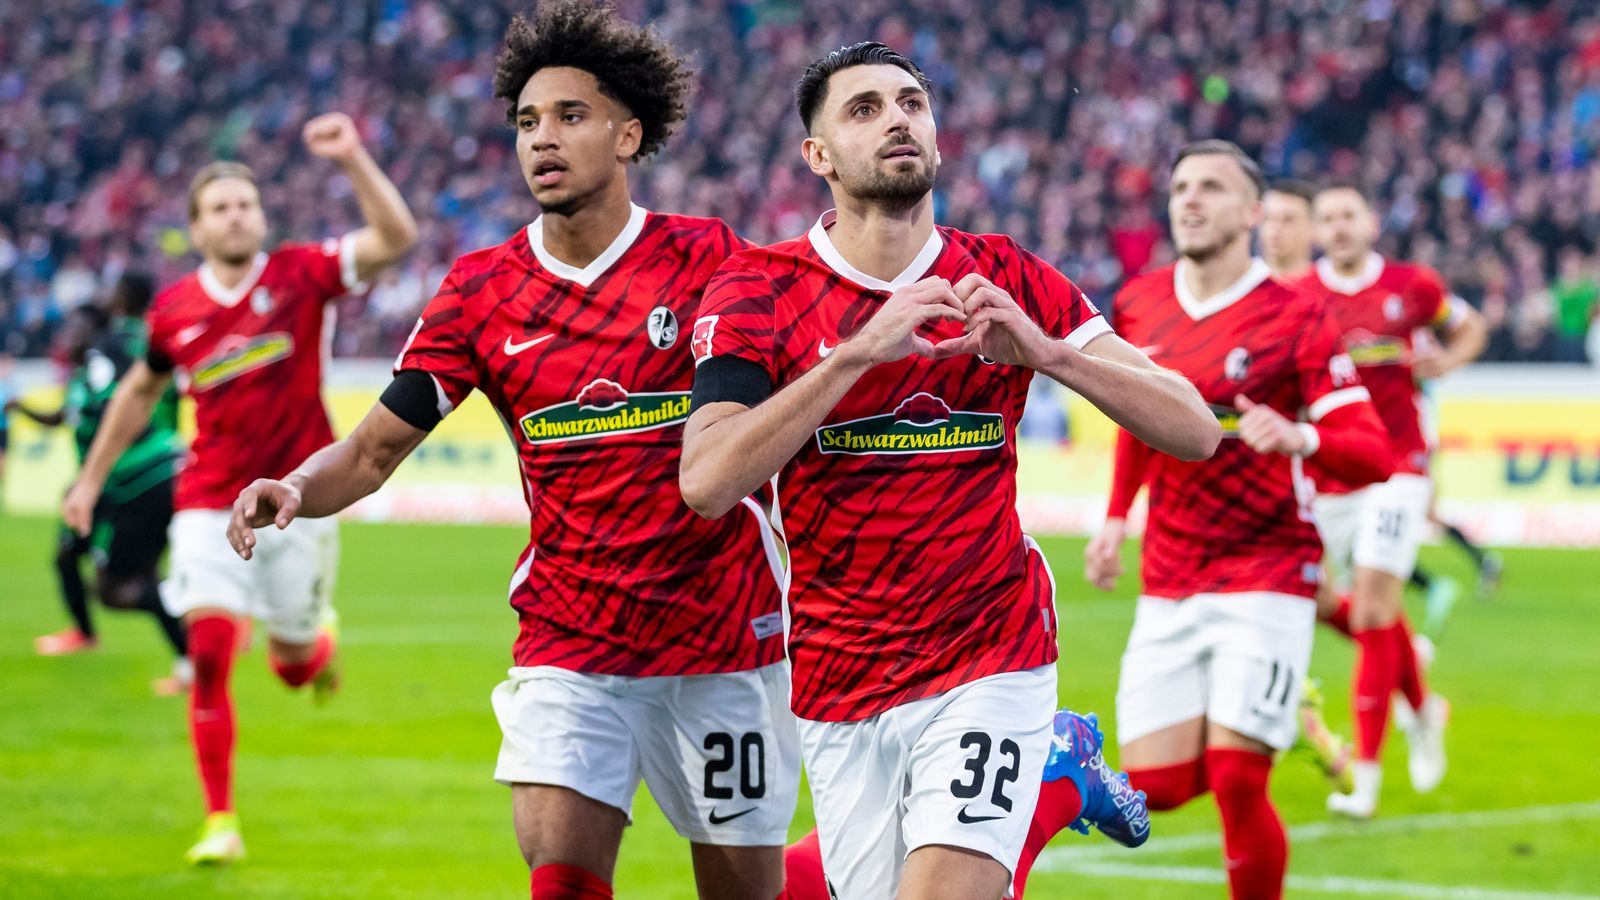 Фрайбург – Унион прогноз 7 мая 2022: ставки и коэффициенты на матч Бундеслиги